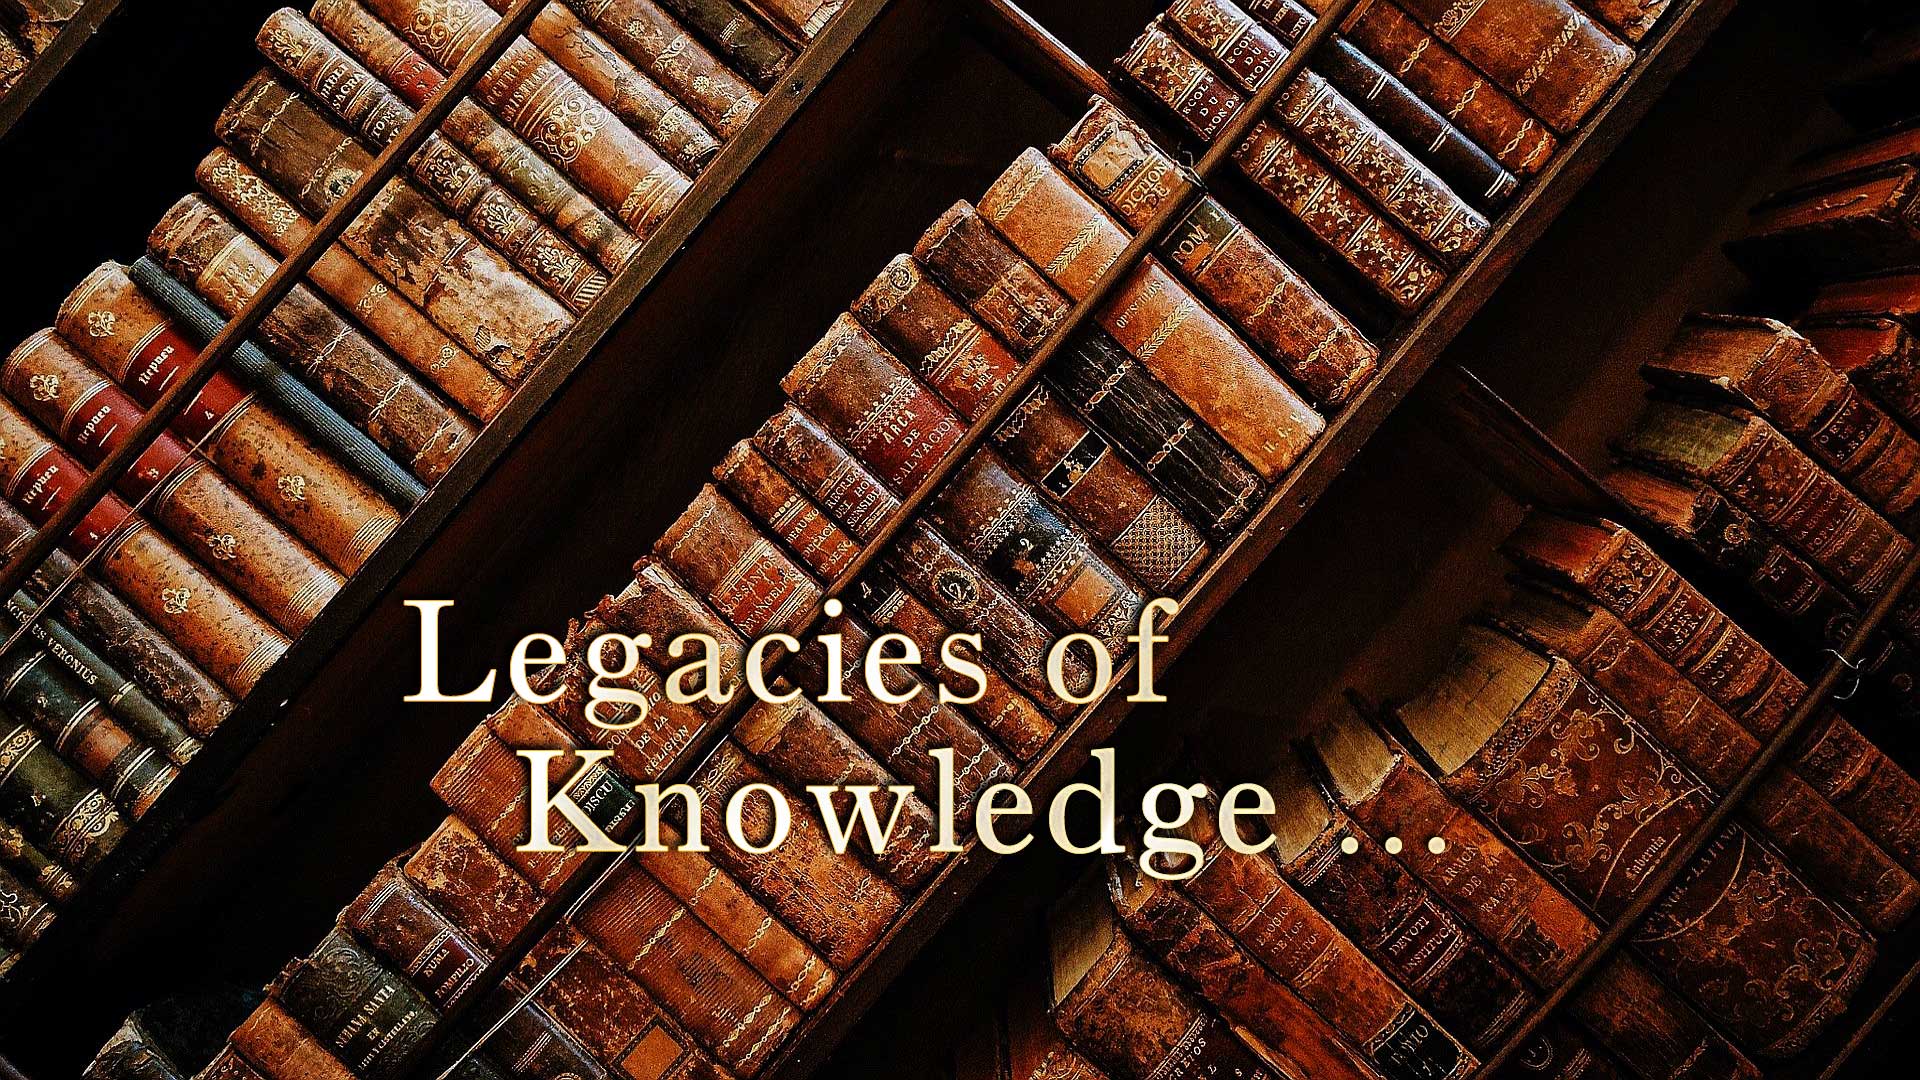 Legacies of Knowledge ...